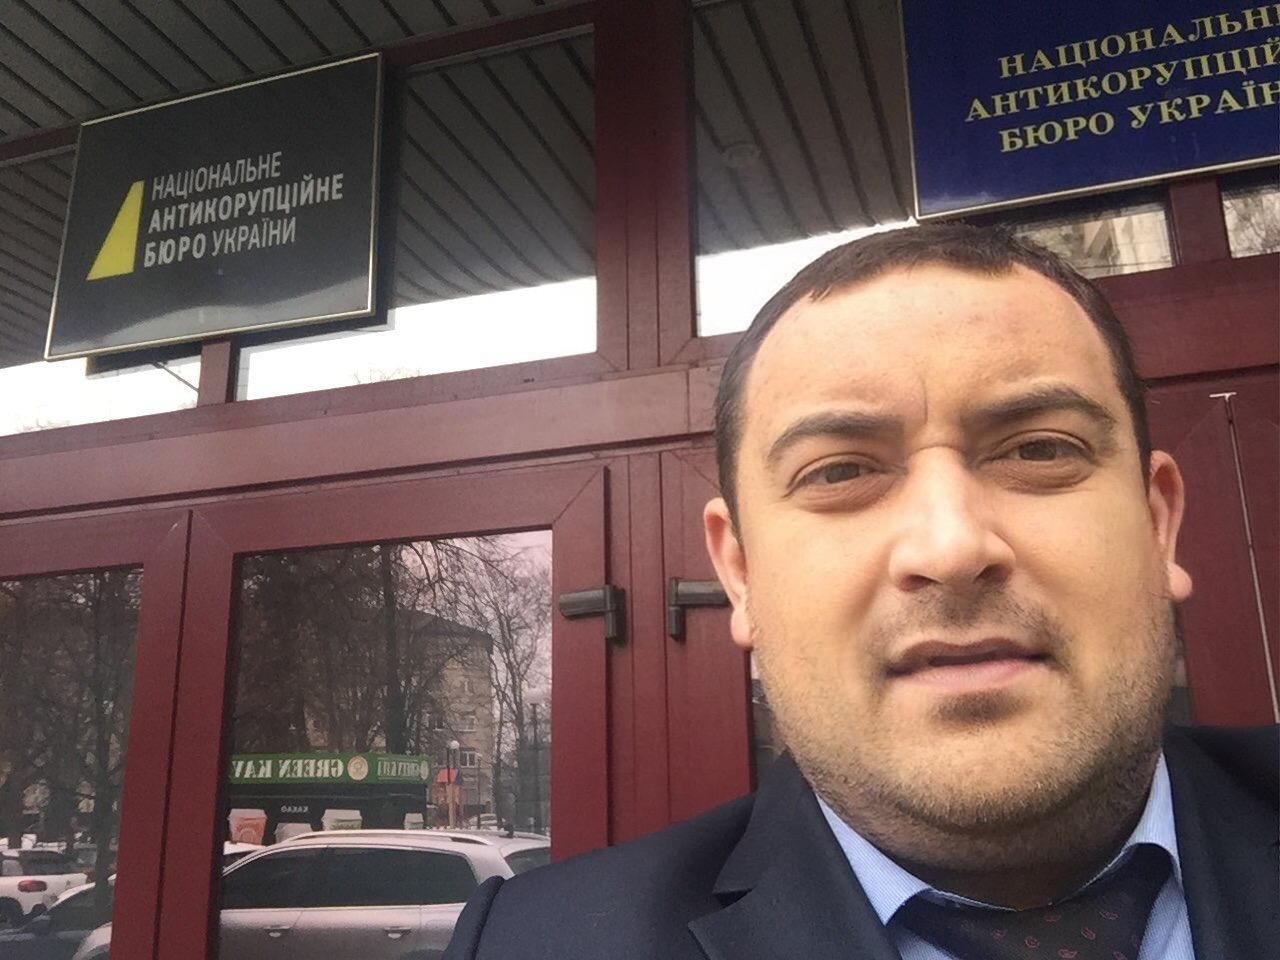 Толкнул и повалил на землю представителя НАБУ: Кузьминых со скандалом покинул суд